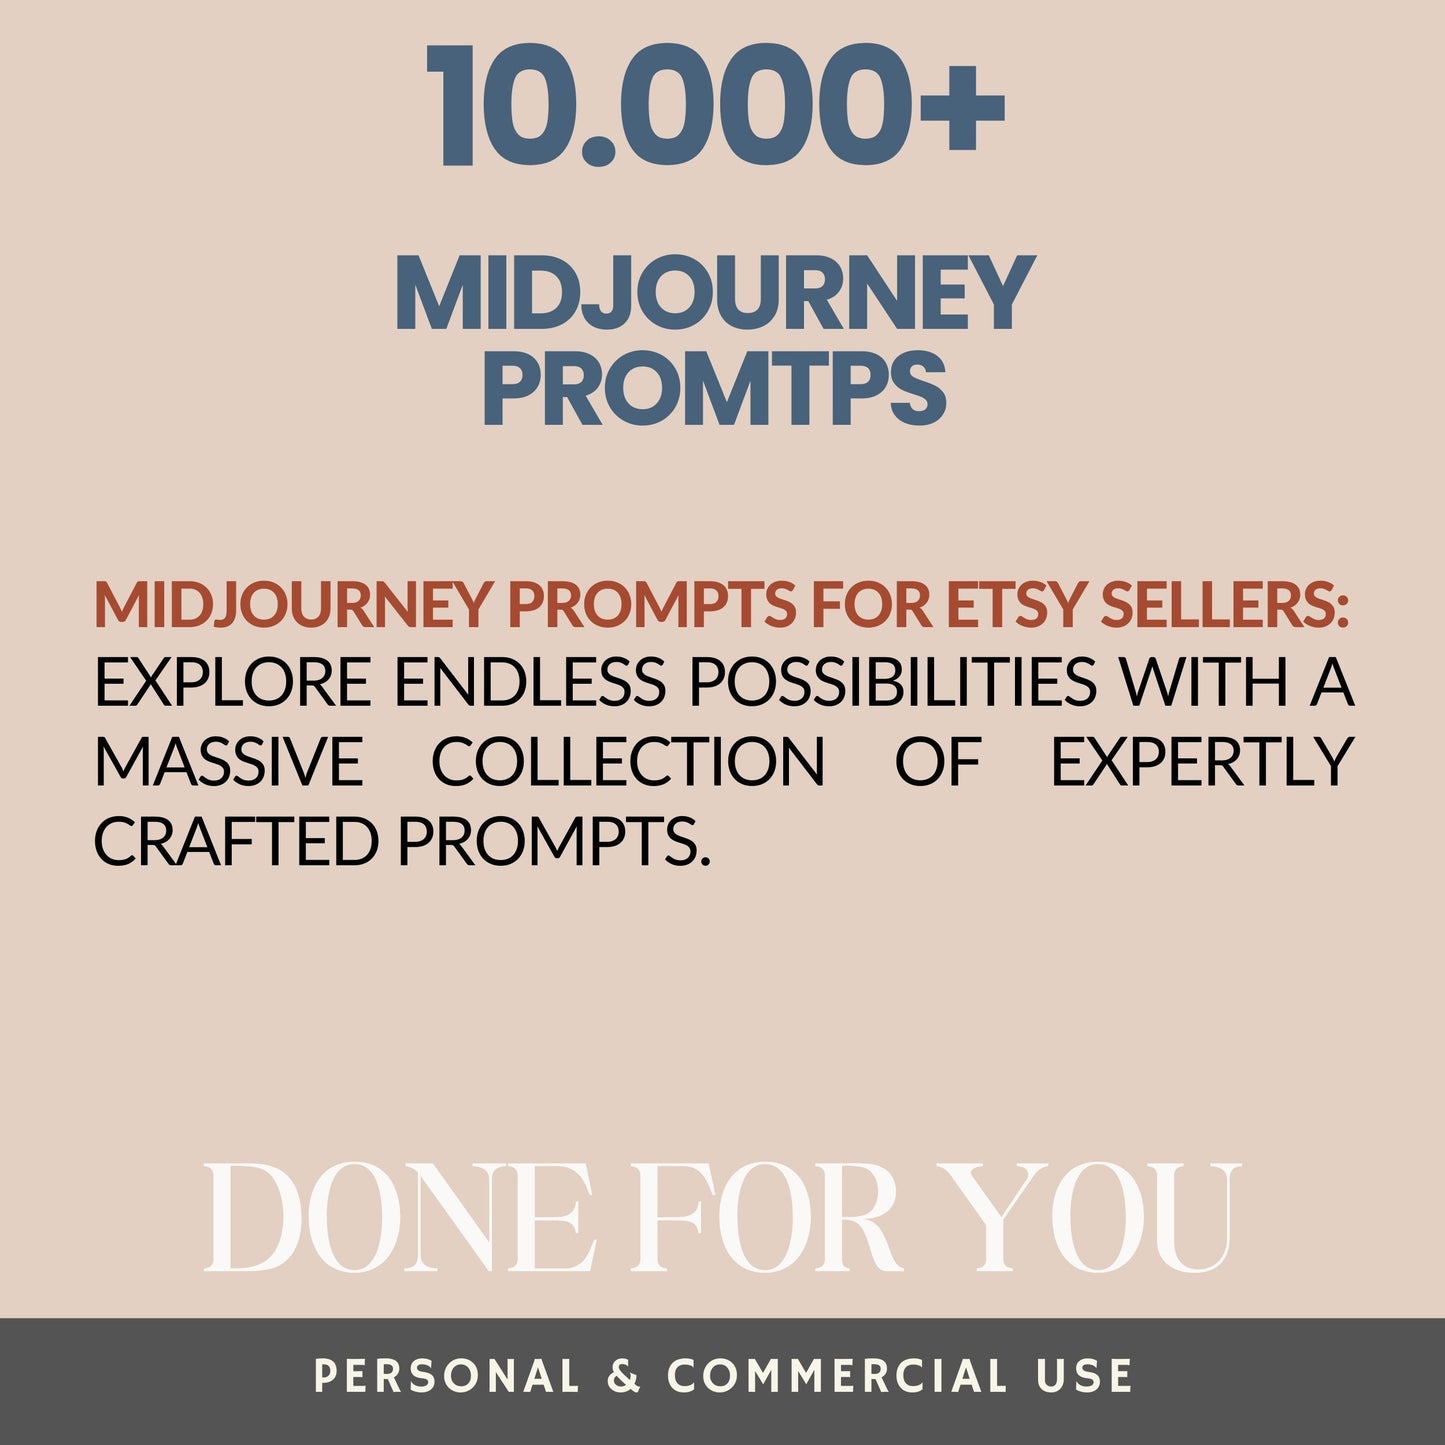 PLR Midjourney Prompts Master Resell Rights MRR Ai Prompts, PLR Digital Products zum Verkauf auf Etsy, Ai Art Prompts für Ihr passives Einkommen